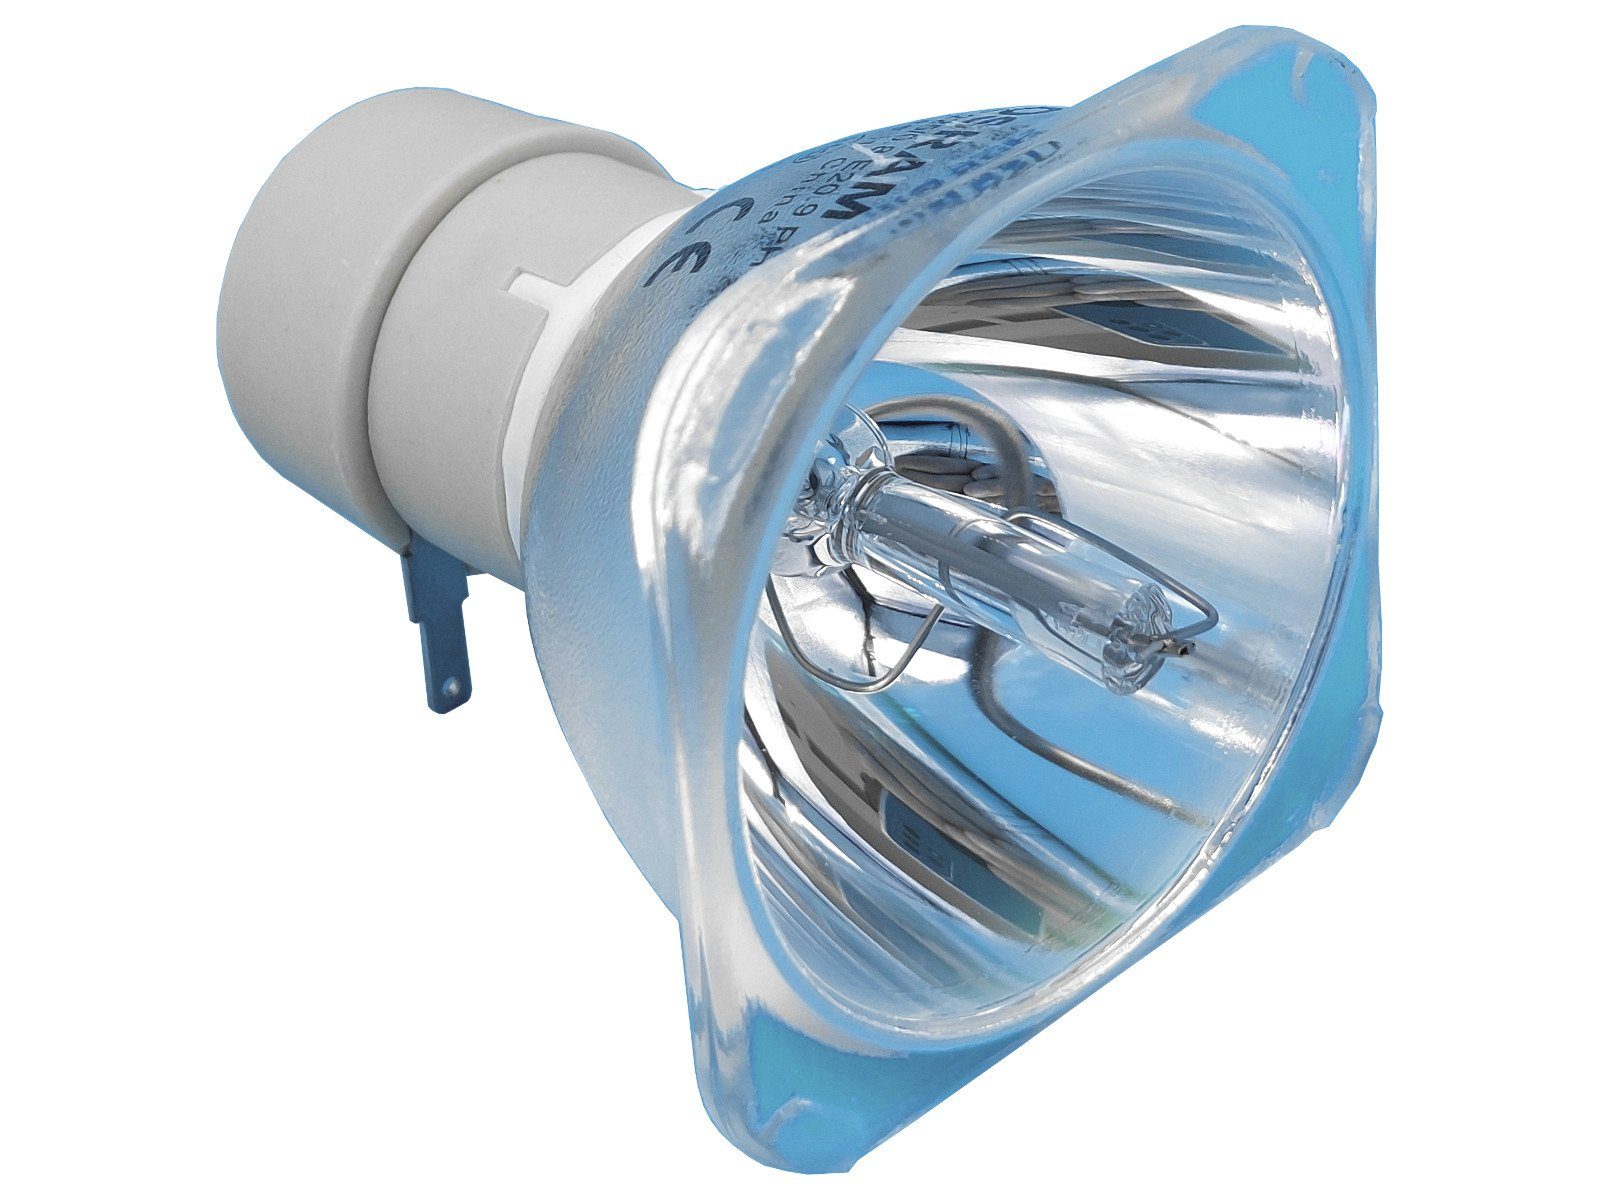 Osram Beamerlampe, 1-St., Beamerlampe für BENQ 5J.JC205.001, Erstausrüster-Qualität, umwelt- & ressourcenschonend